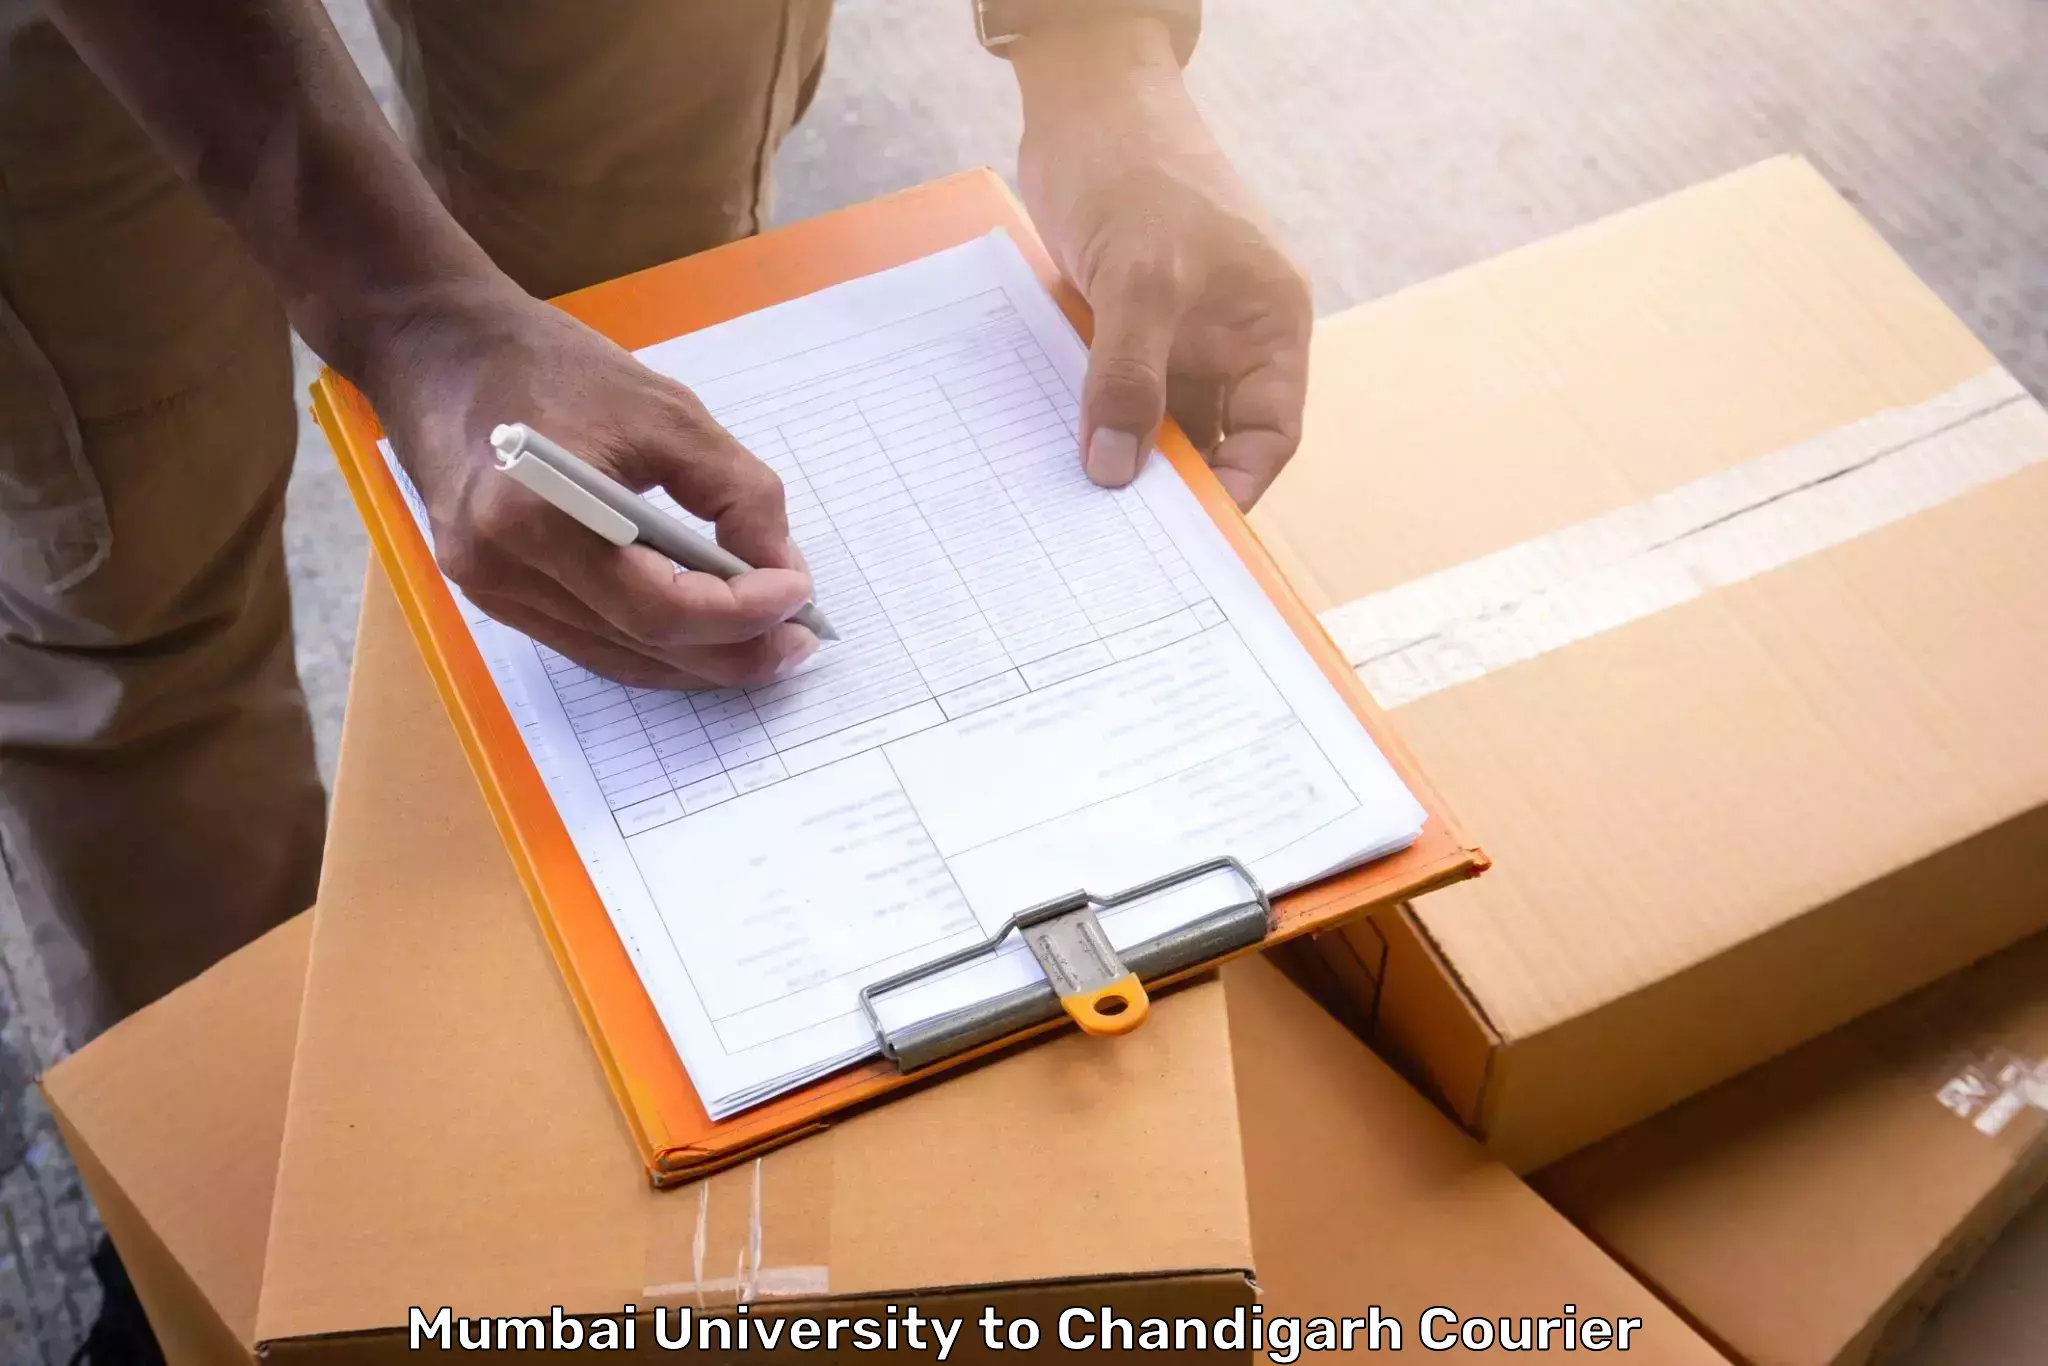 Door-to-door baggage service in Mumbai University to Chandigarh